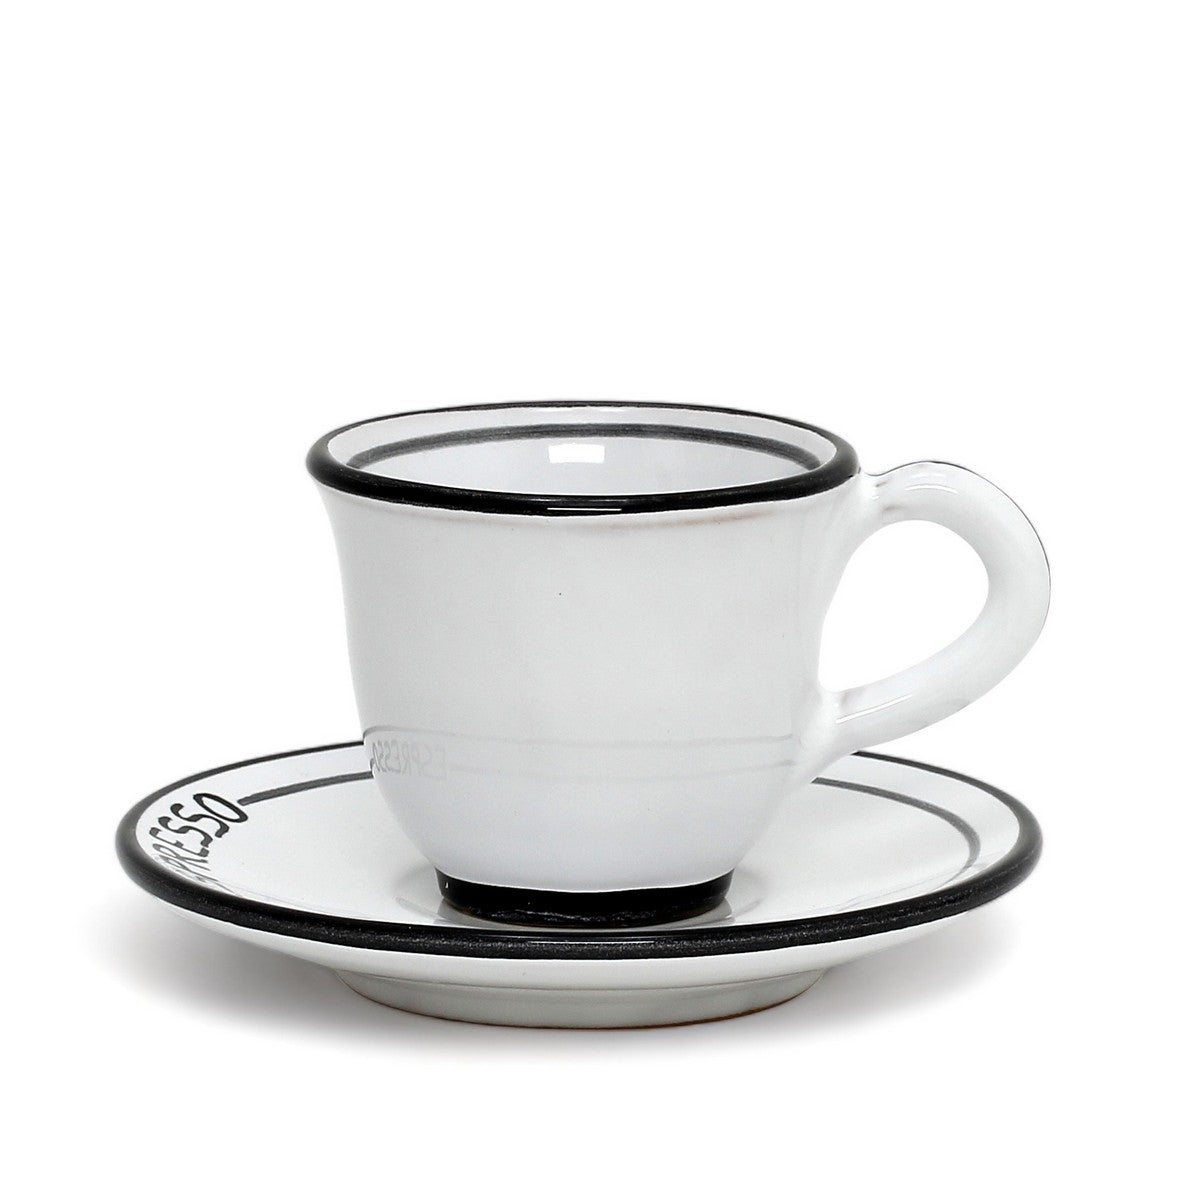 POSATA NERO: Espresso Cup and Saucer